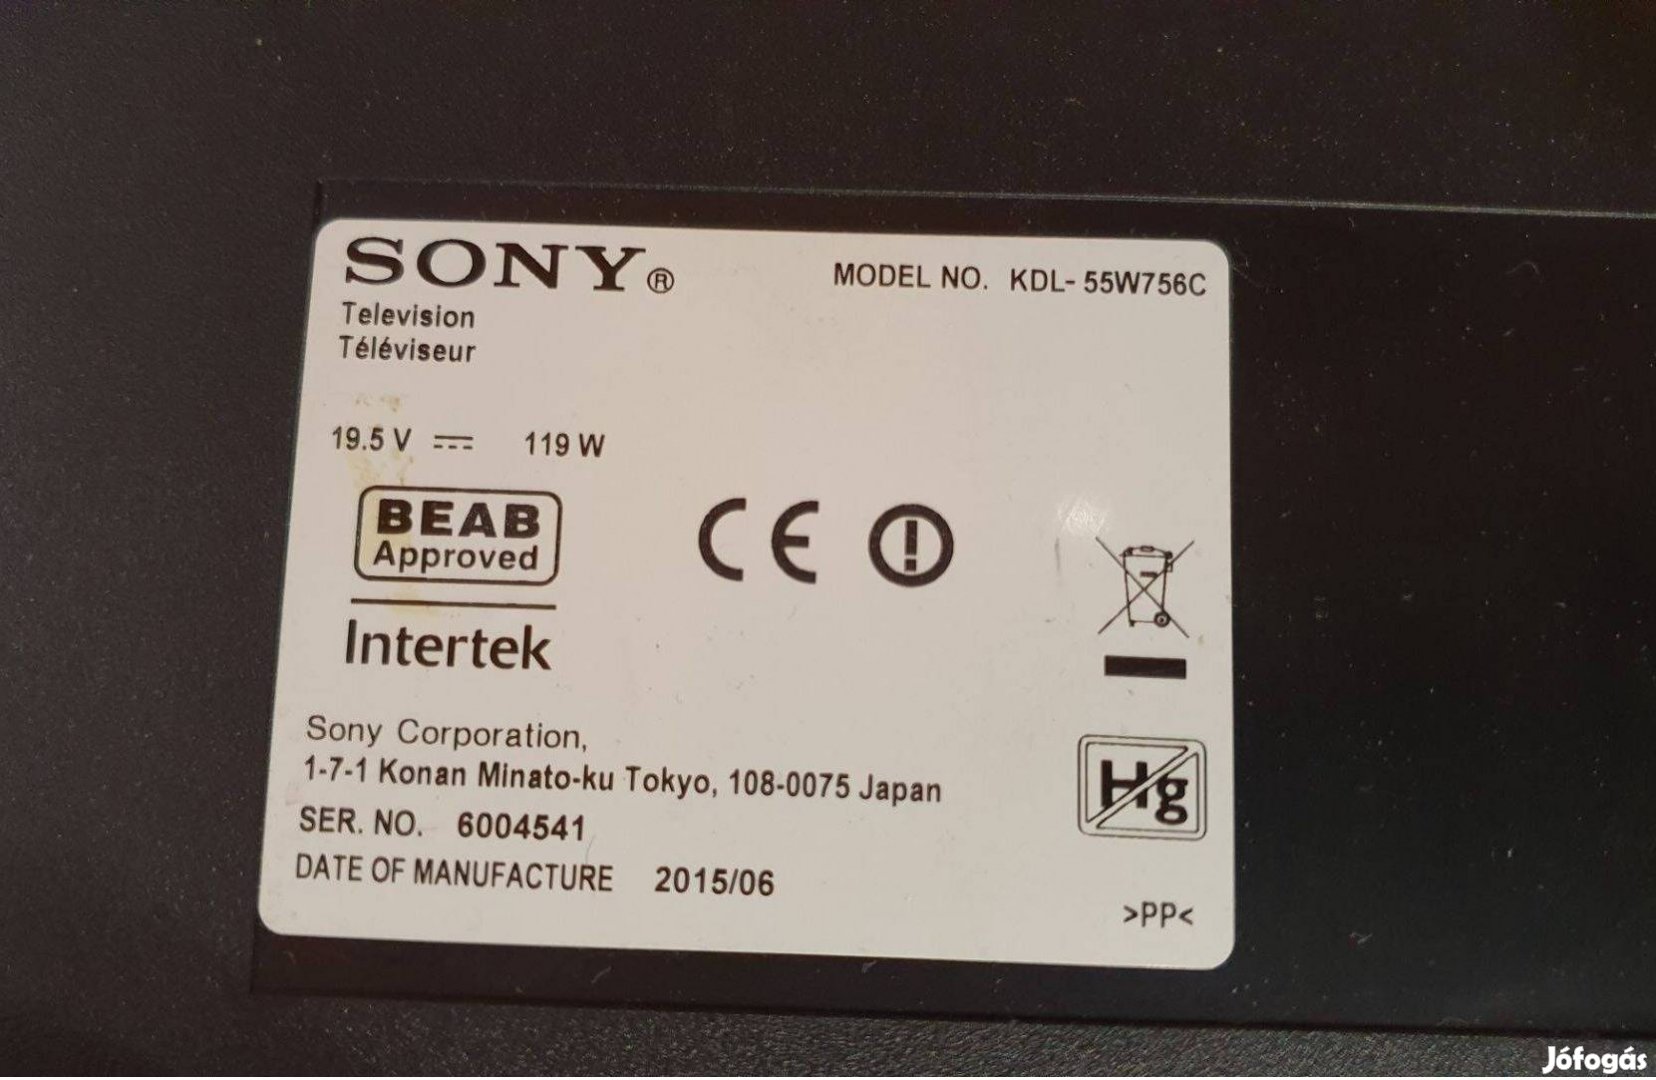 Sony Kdl-55W756C LED LCD tv törött alkatrésznek main tcon elkeltelkelt